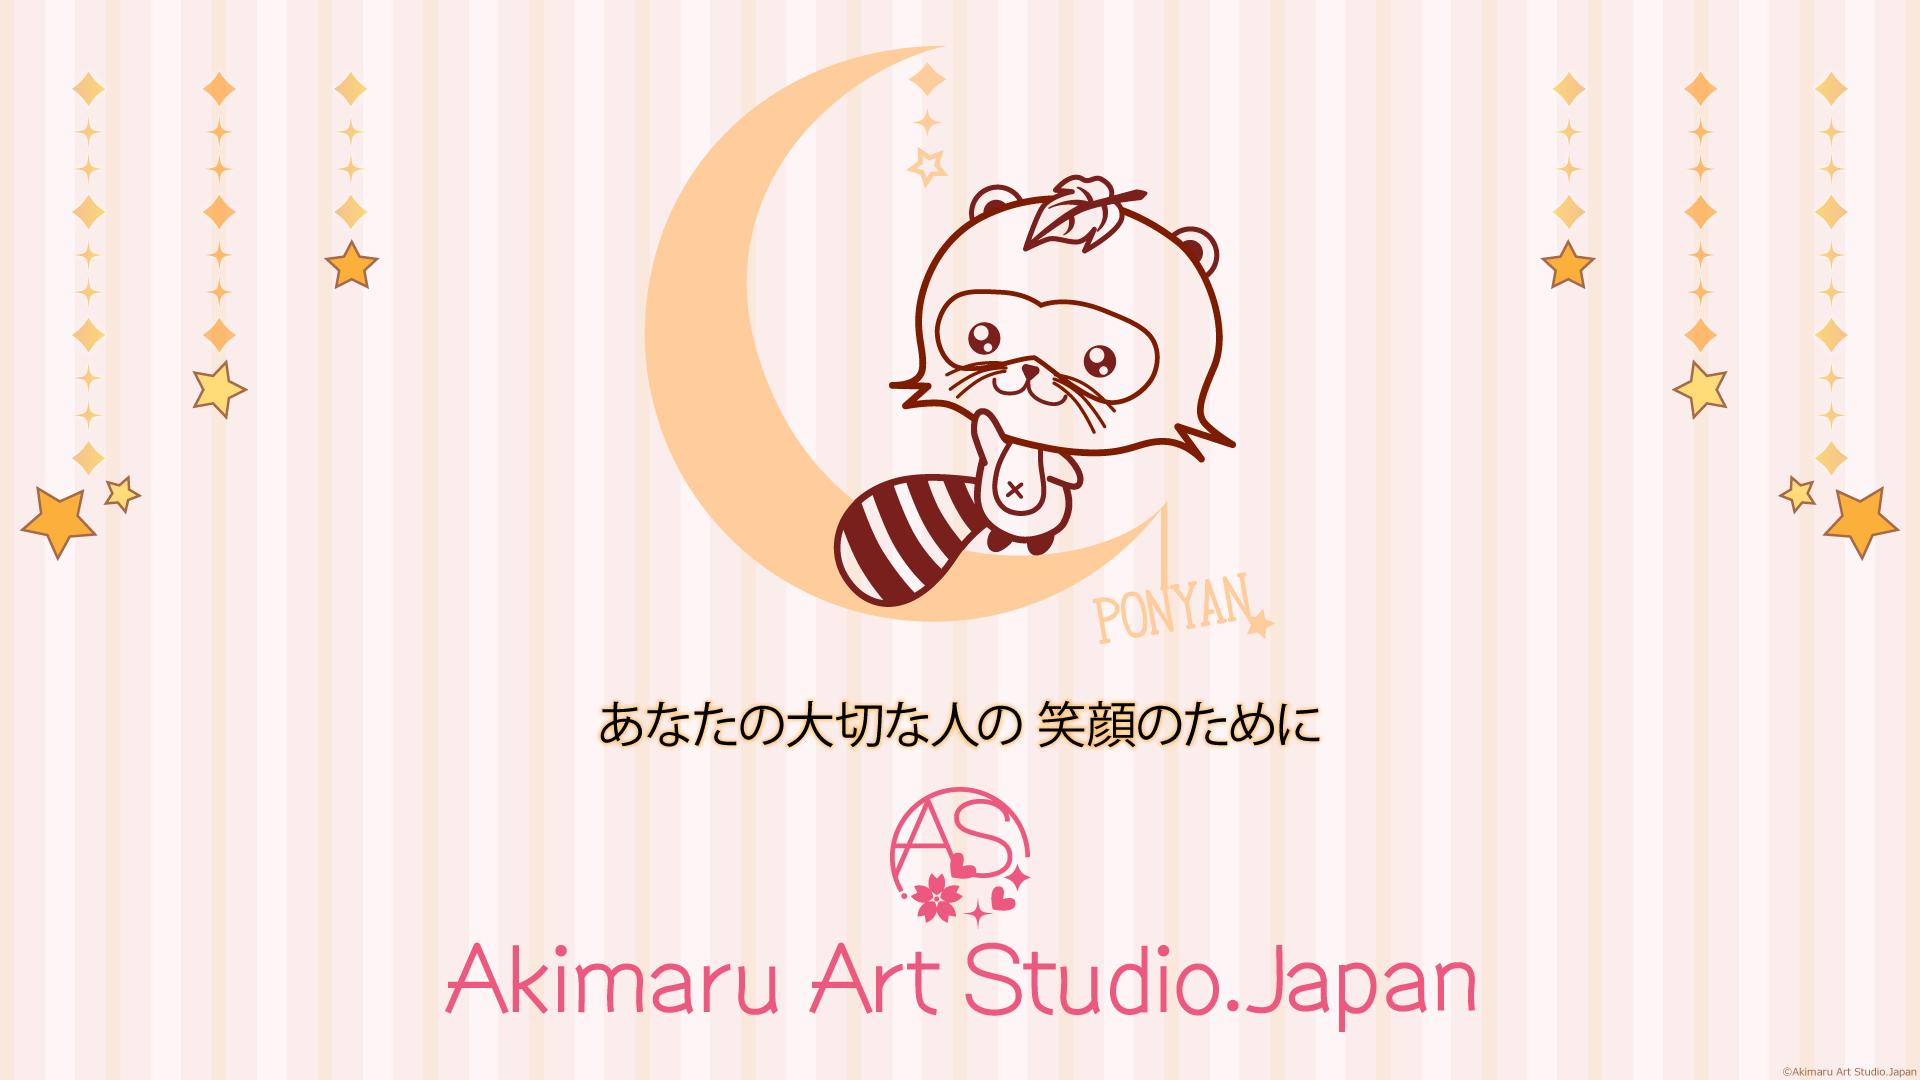 Akimaru Art Studio.Japanは、ヒーリングクリエイターとして、大切な人の笑顔が見たいあなたのお手伝いをしています。